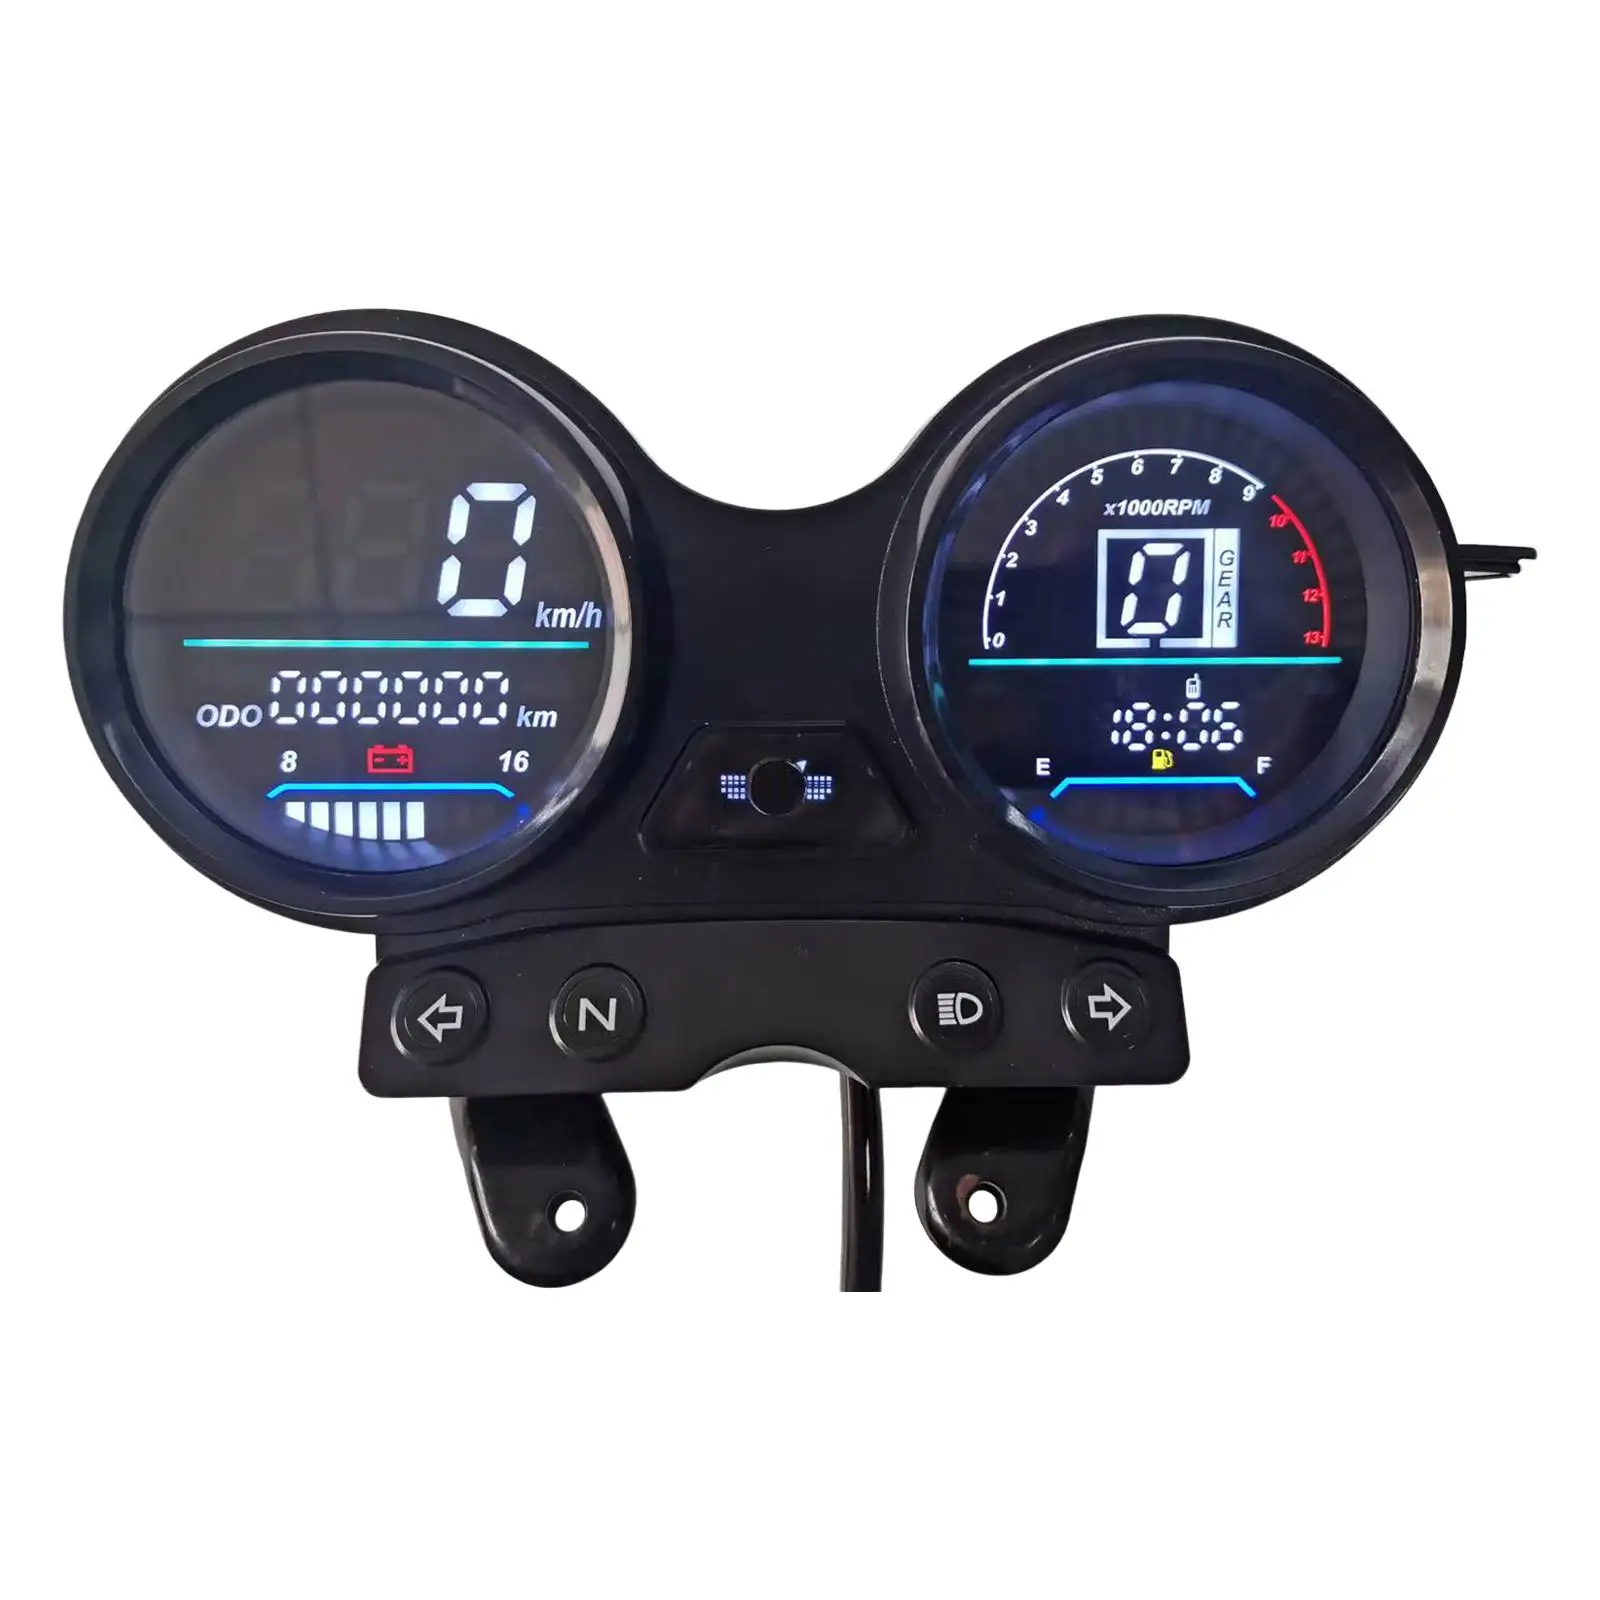 

12V Digital Odometer Speedometer for Yamaha YBR125 Motorbike Motorcycle LCD Display speedometer Fuel Gauge digital instrument